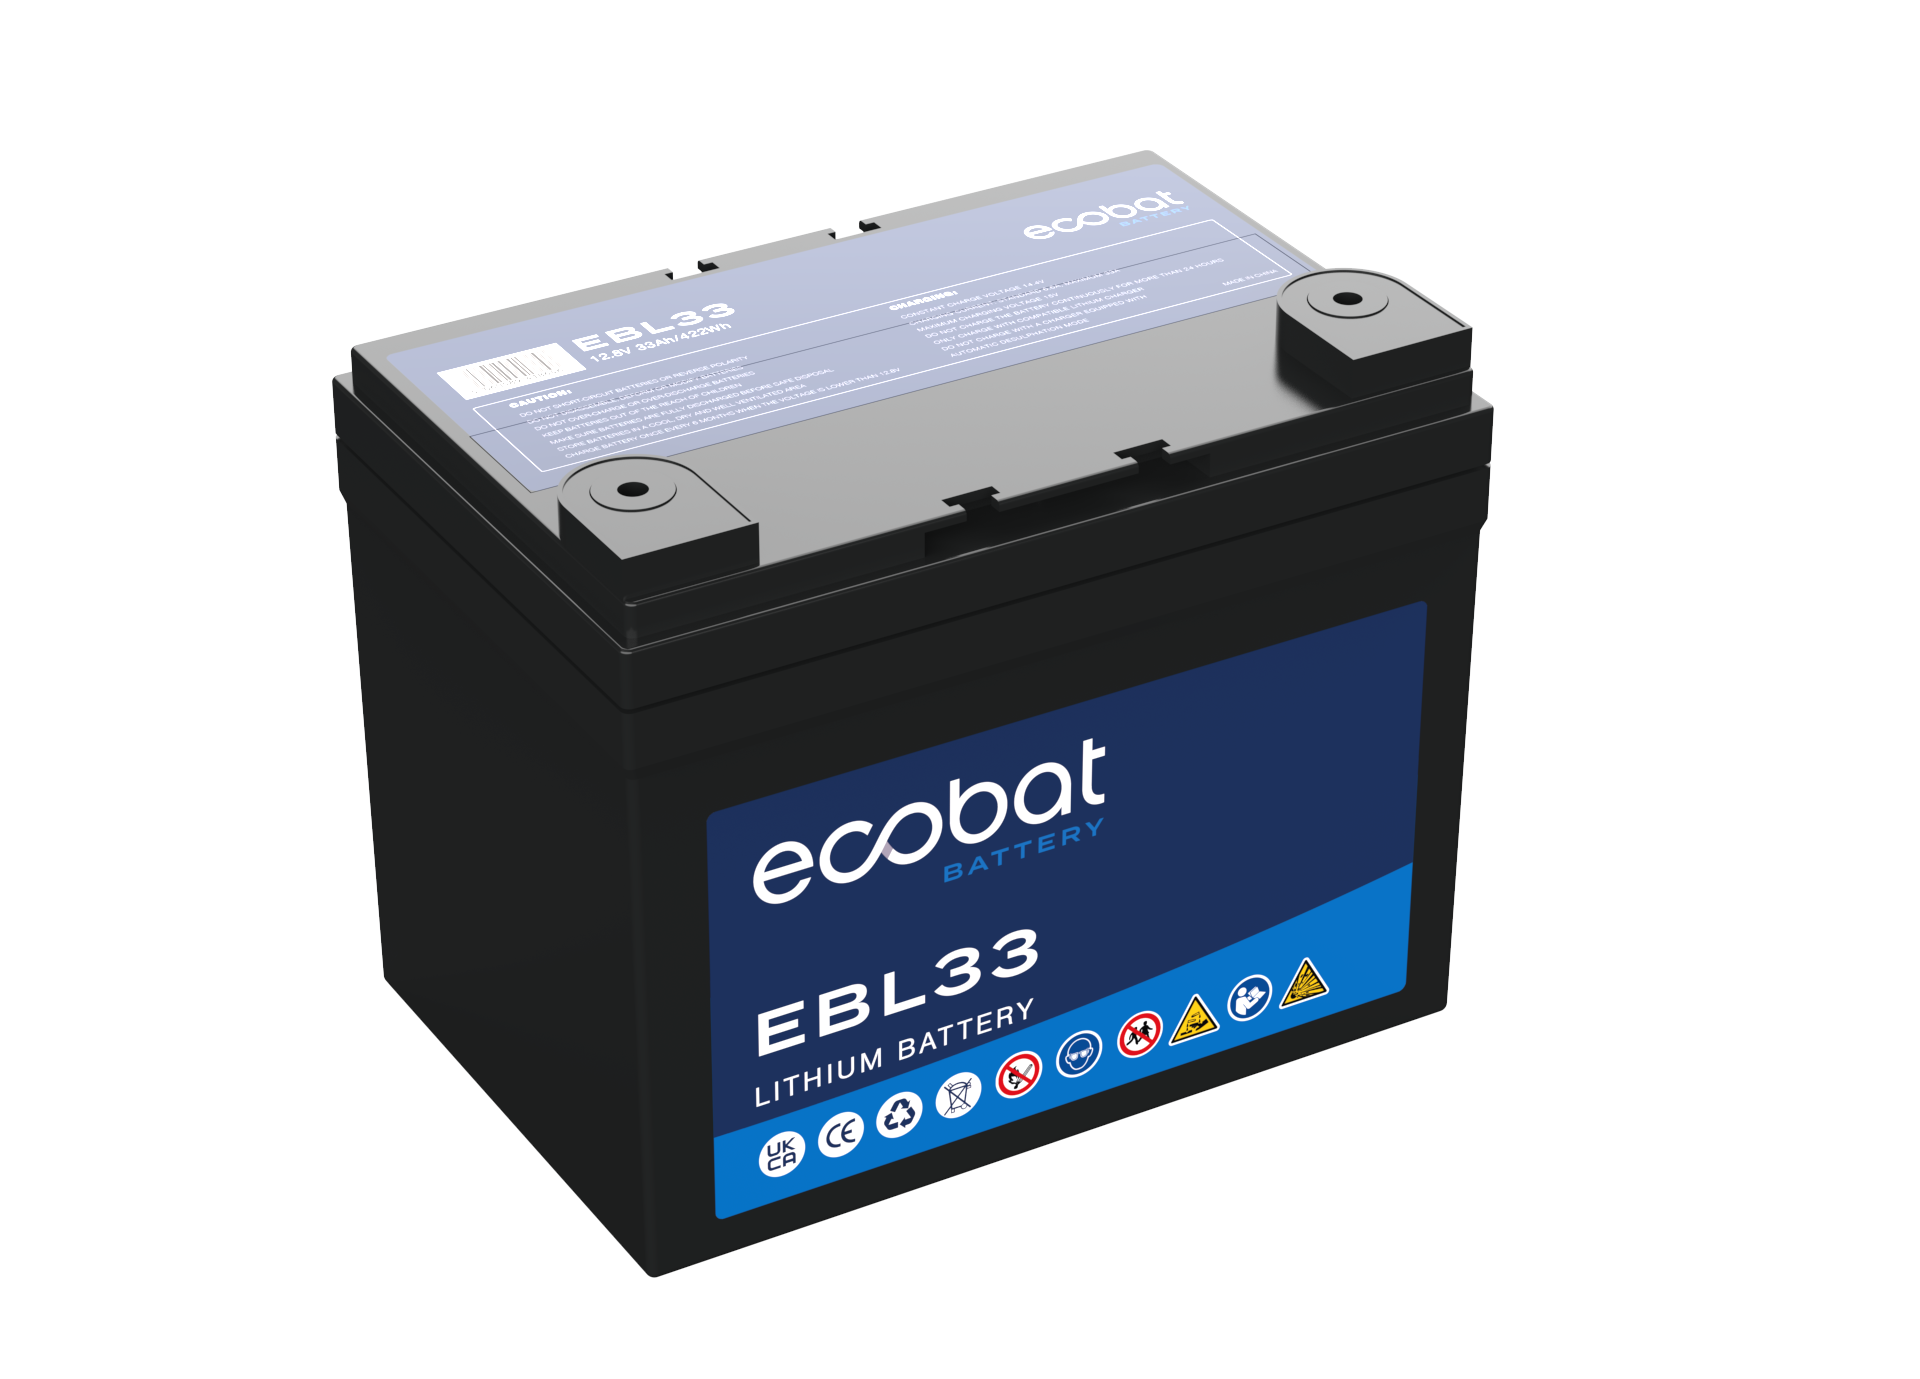 Ecobat EBL33